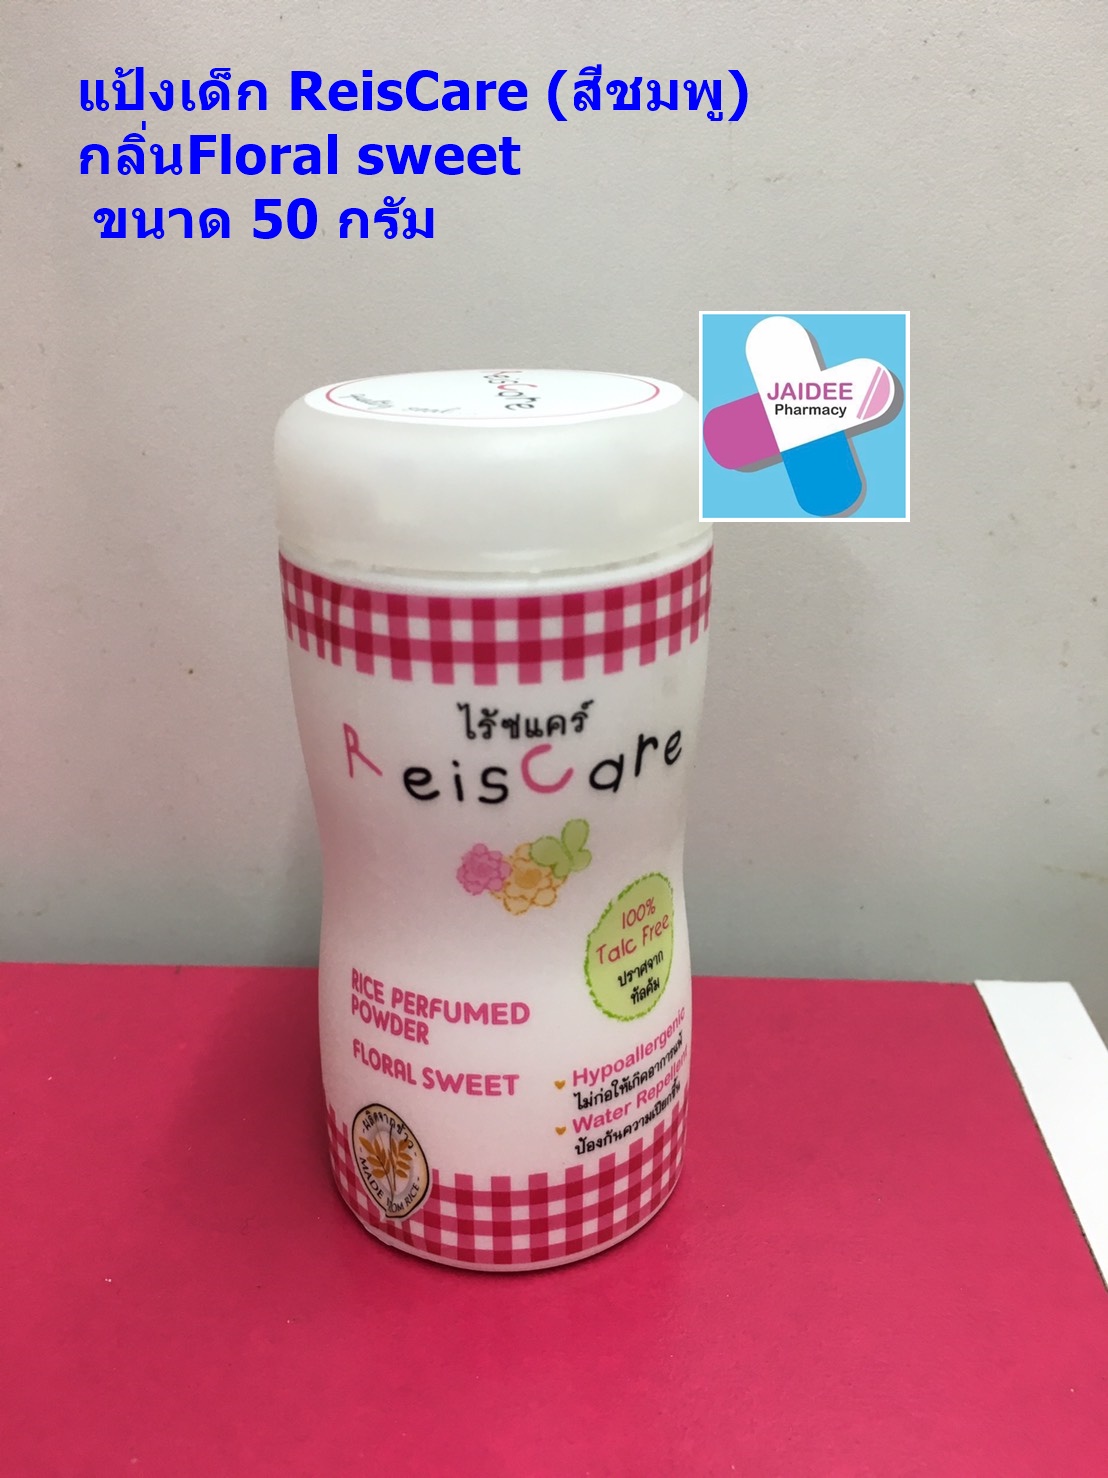 แป้งเด็ก ReisCare กลิ่นFloral sweet  (สีชมพู) ขนาด 50 กรัม